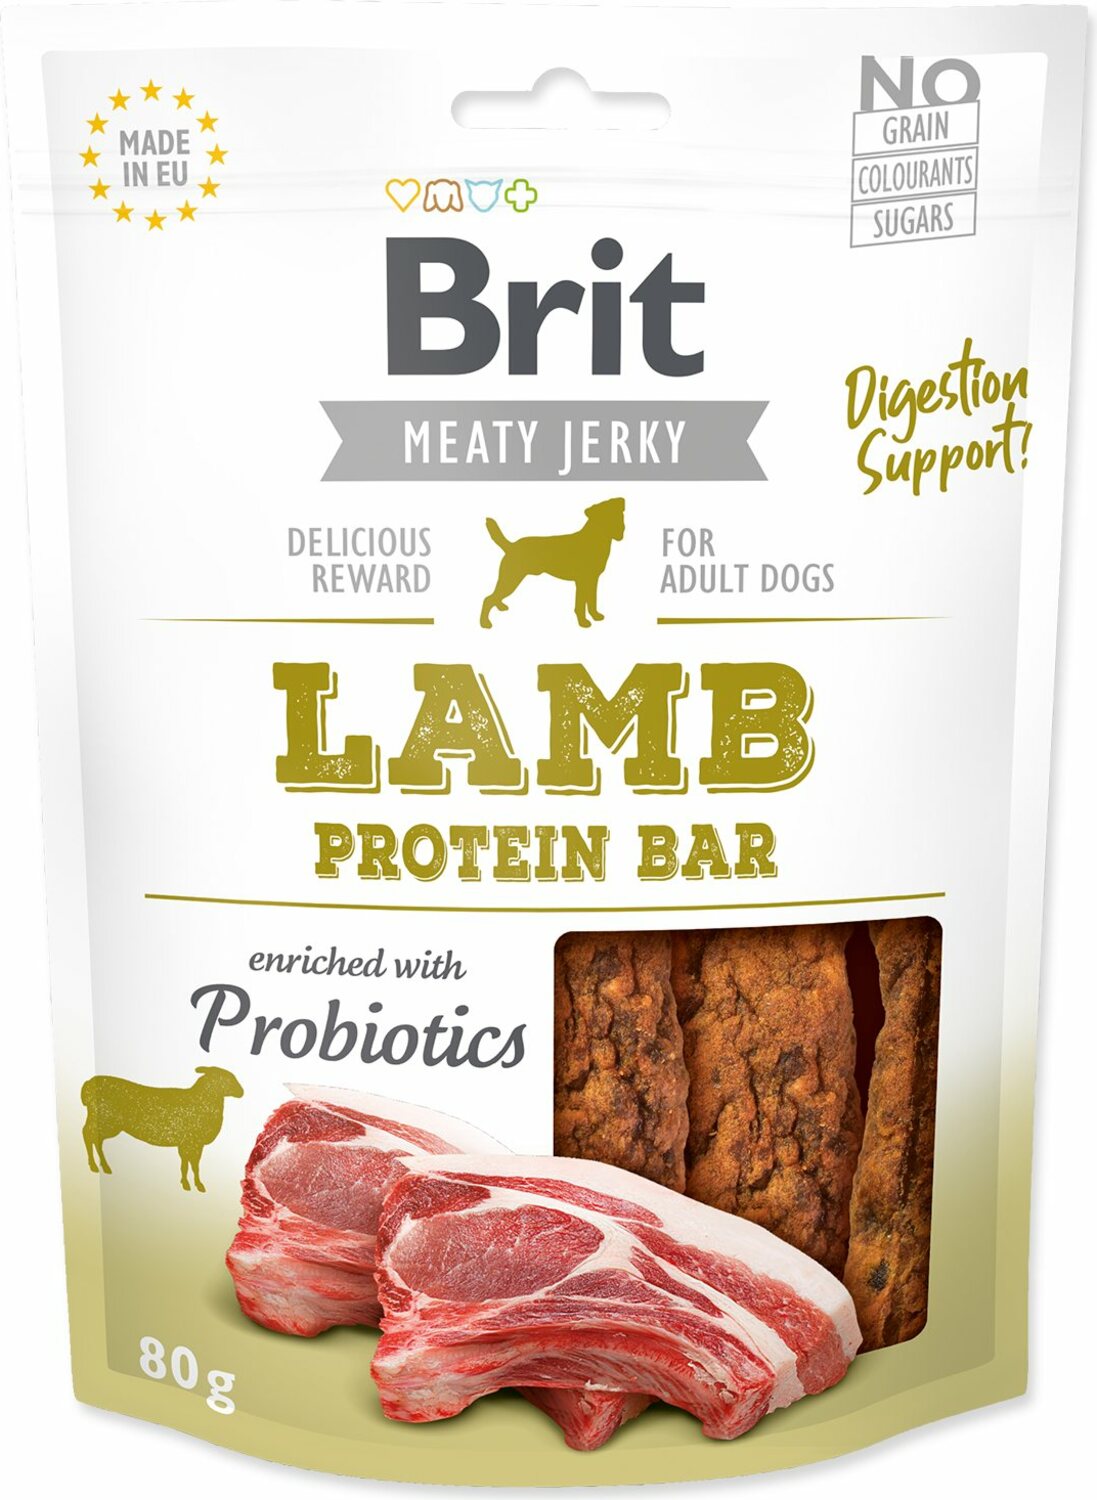 Pochoutka Brit Jerky protein Bar jehně 80g